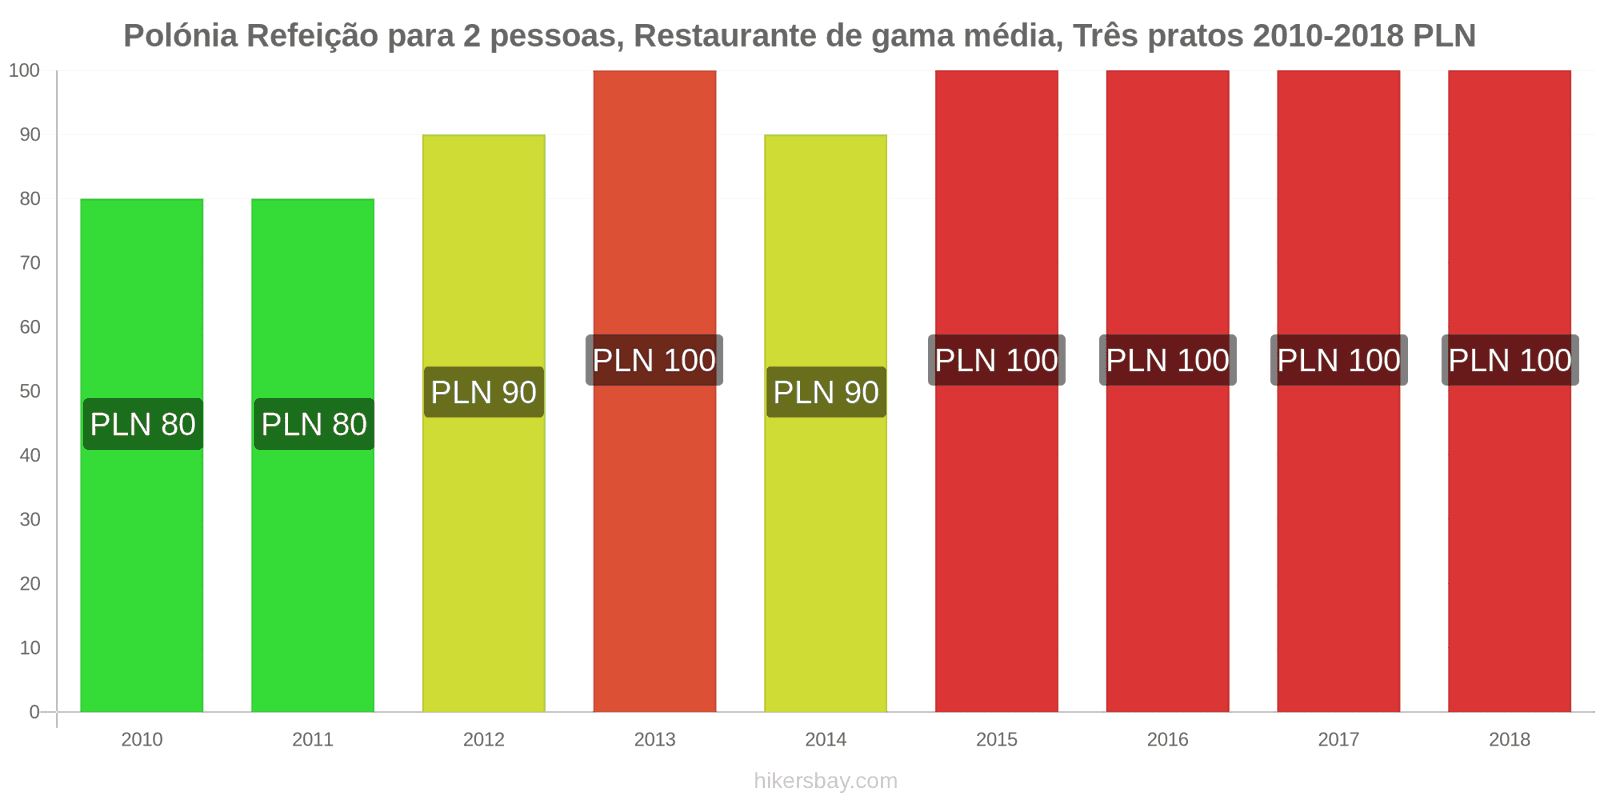 Polónia mudanças de preços Refeição para 2 pessoas, restaurante de gama média, três pratos hikersbay.com